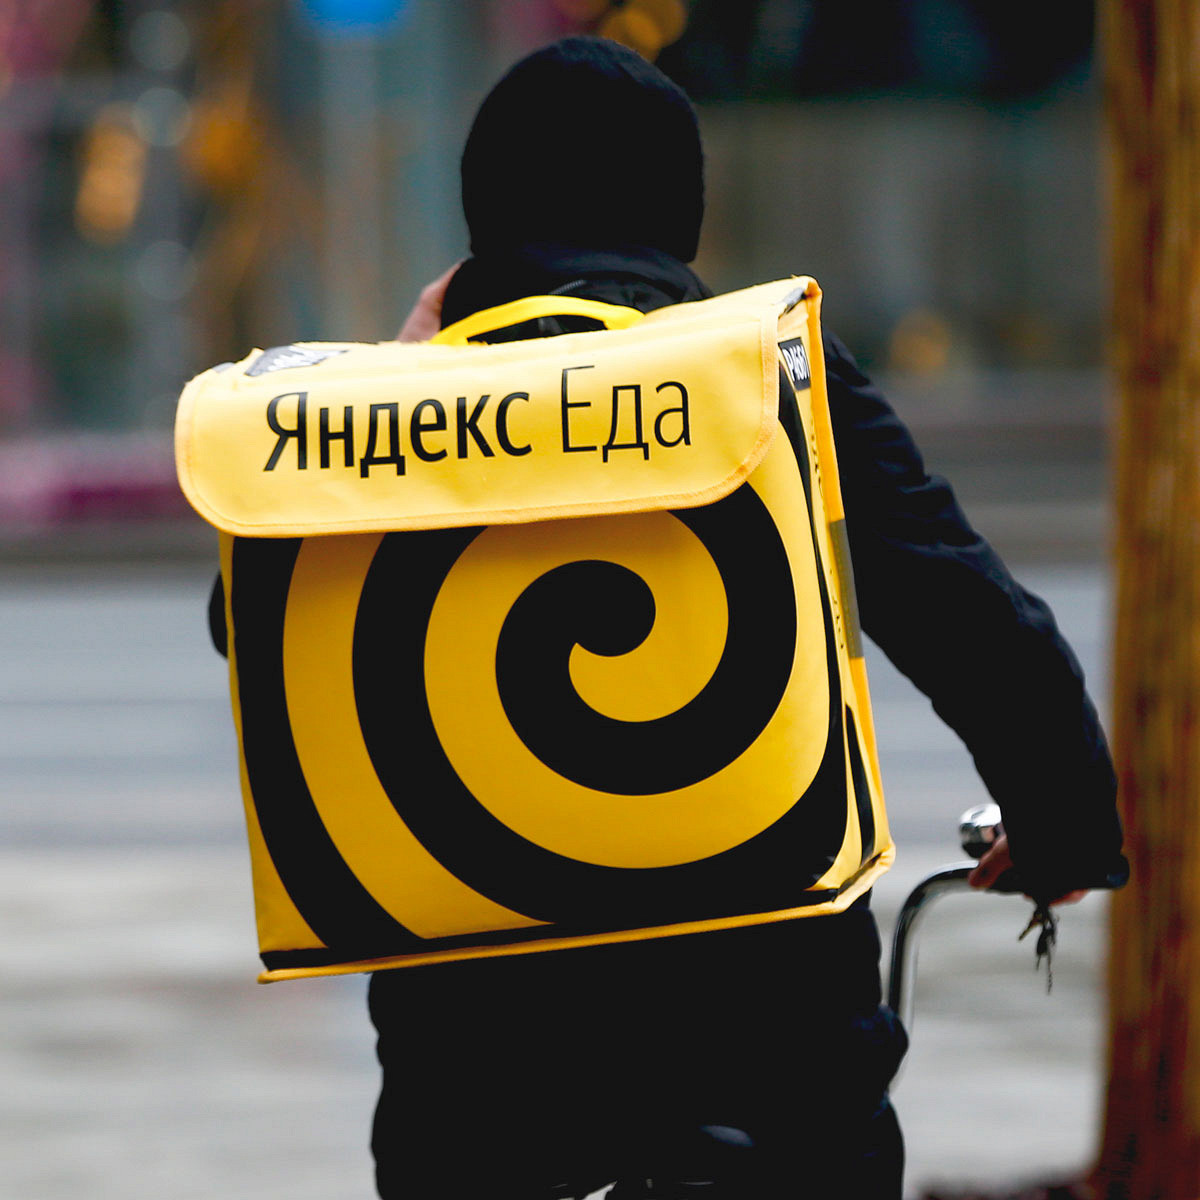 В сети обсуждают слитые данные клиентов «Яндекс.Еды»: одни шутят, другие думают о переезде